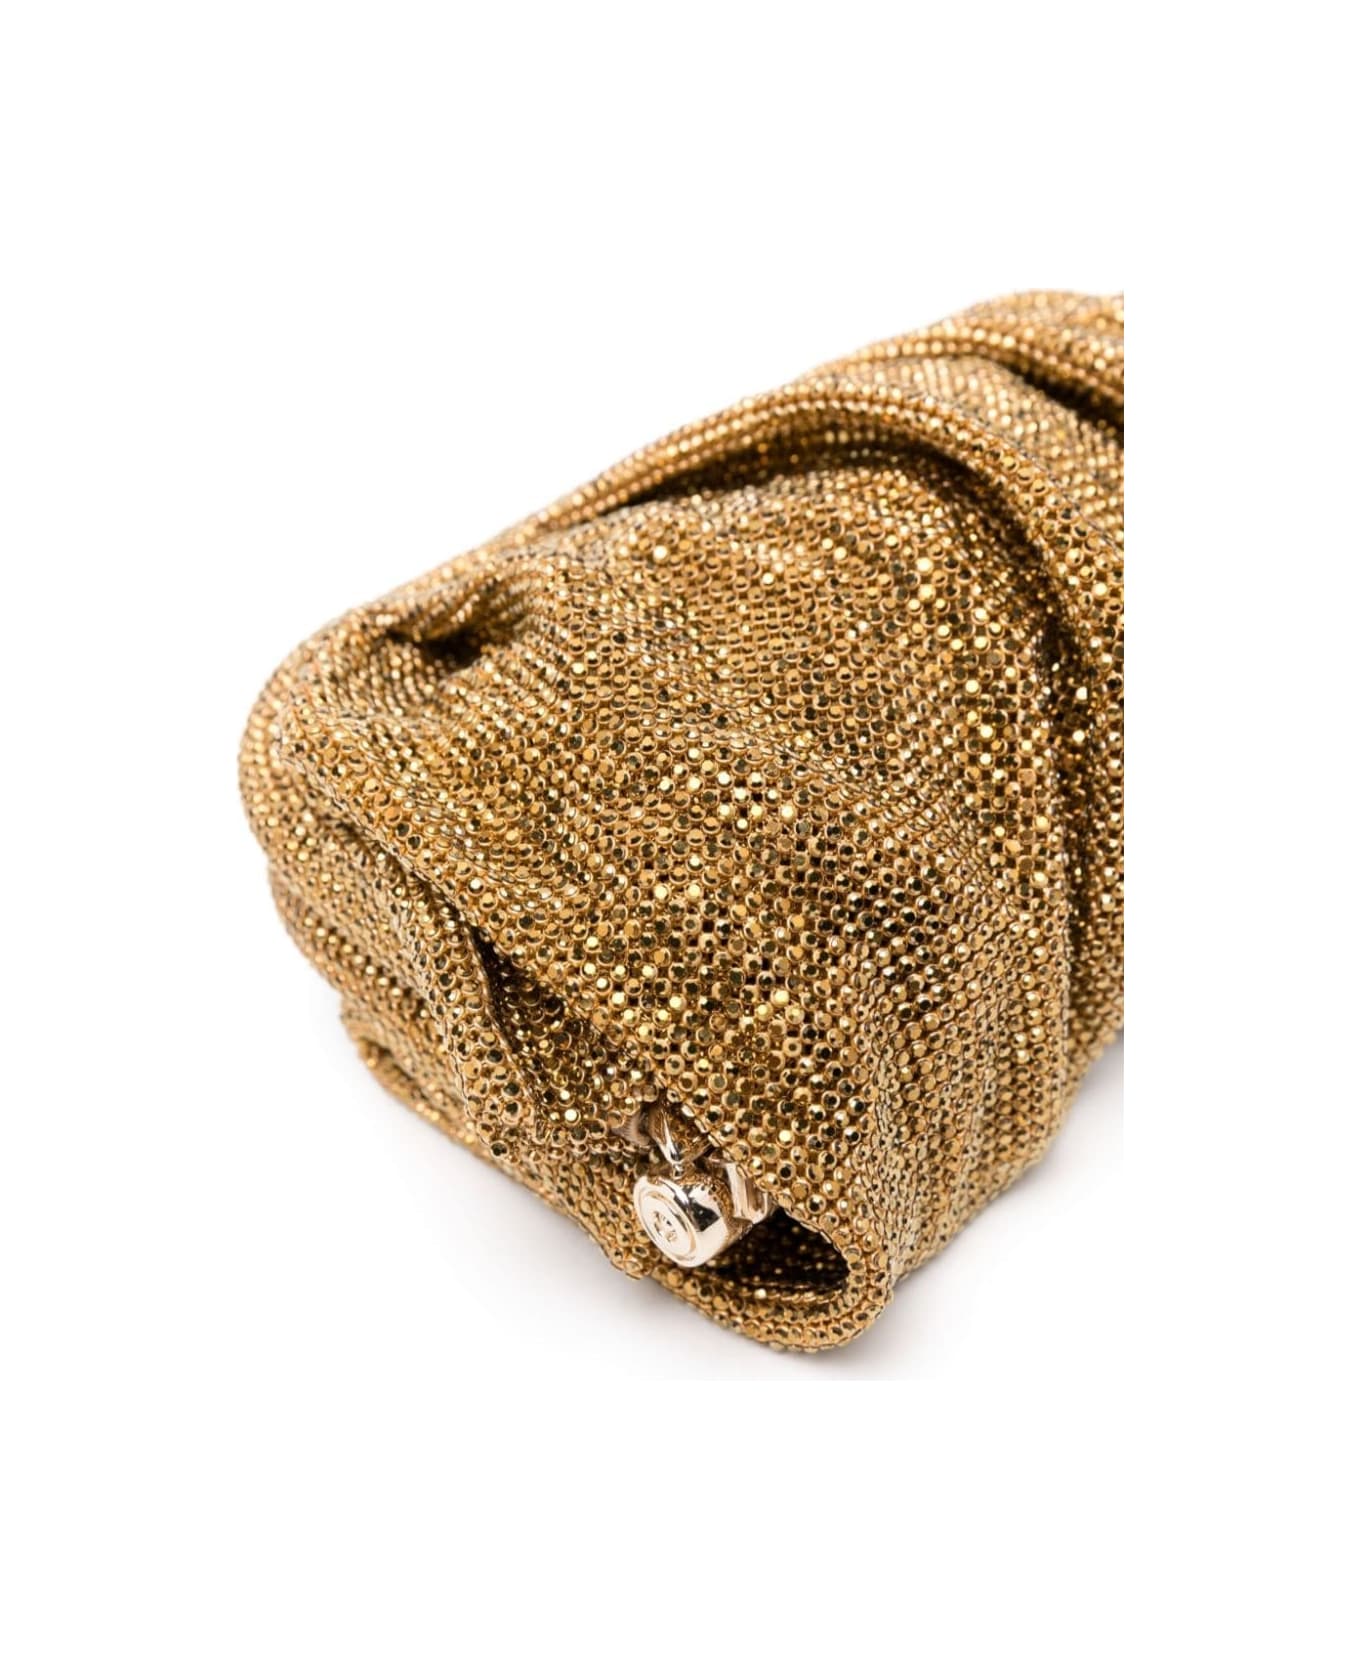 Benedetta Bruzziches 'venus La Petite' Gold Clutch Bag In Fabric With Allover Crystals Woman - Metallic